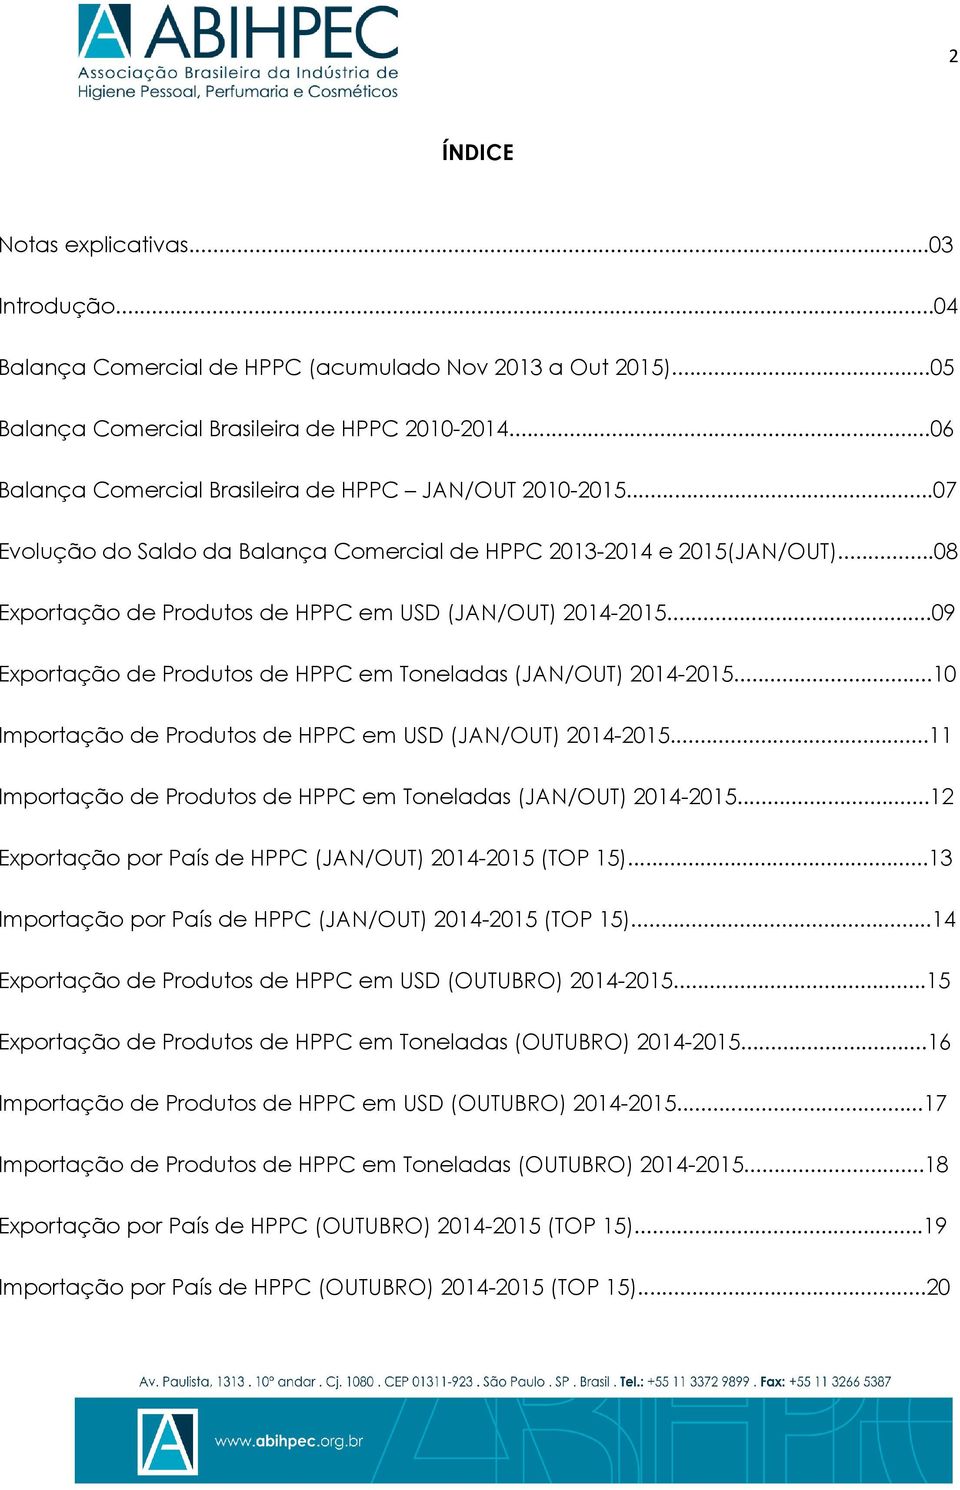 ..09 Exportação de Produtos de HPPC em Toneladas (JAN/OUT) 2014-2015...10 Importação de Produtos de HPPC em USD (JAN/OUT) 2014-2015...11 Importação de Produtos de HPPC em Toneladas (JAN/OUT) 2014-2015.